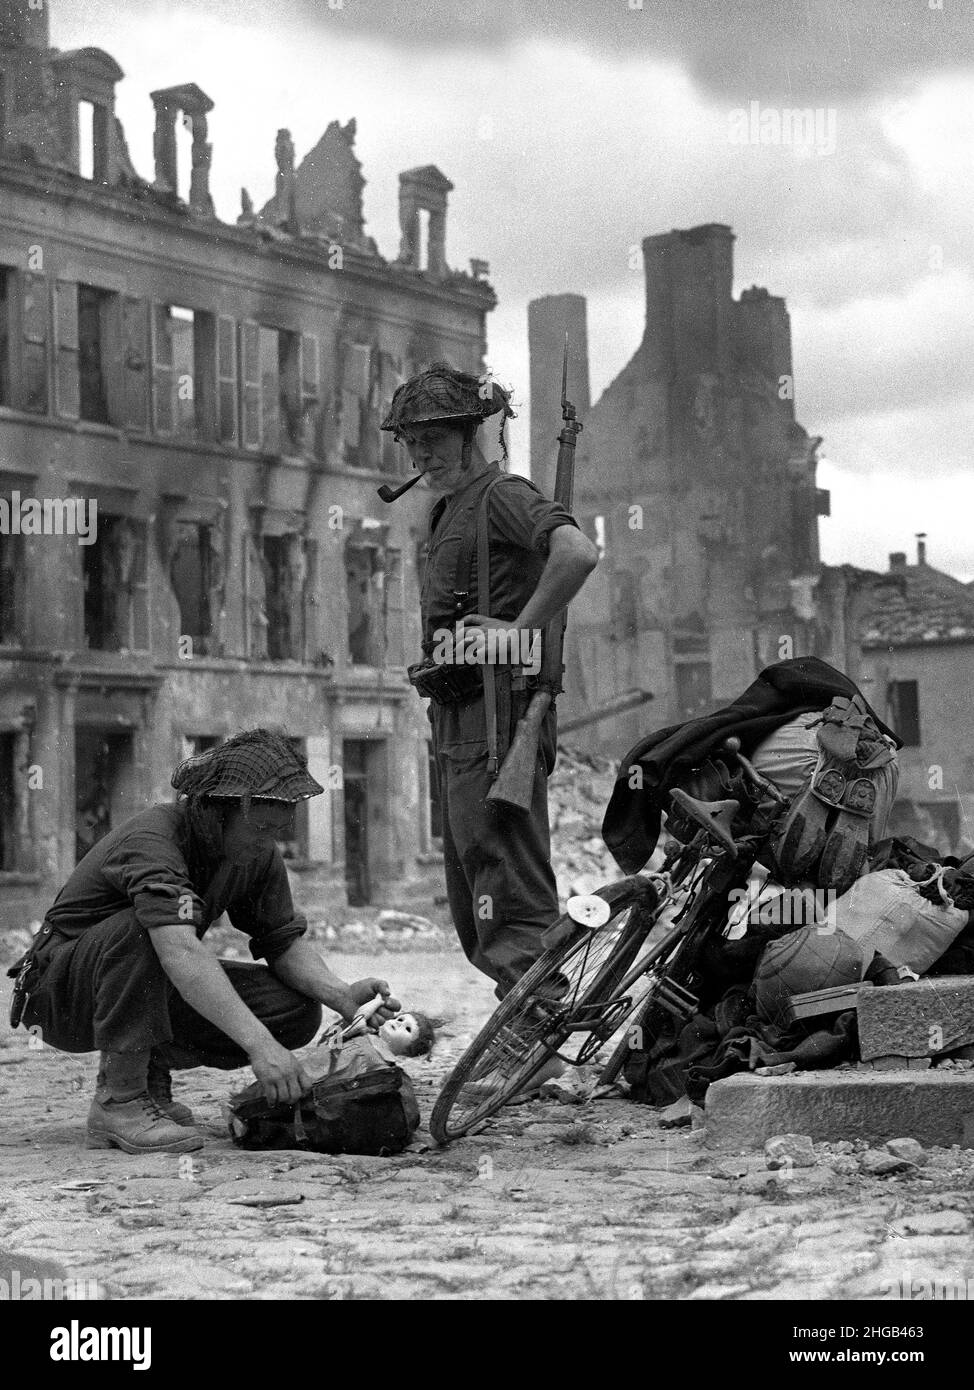 Norte de Francia Guerra Mundial Dos 1944 soldados británicos mirando una muñeca infantil encontrados con una bicicleta de civiles tratando de escapar. ARCHIVOS MÁS GRANDES DISPONIBLES BAJO PETICIÓN Foto de stock